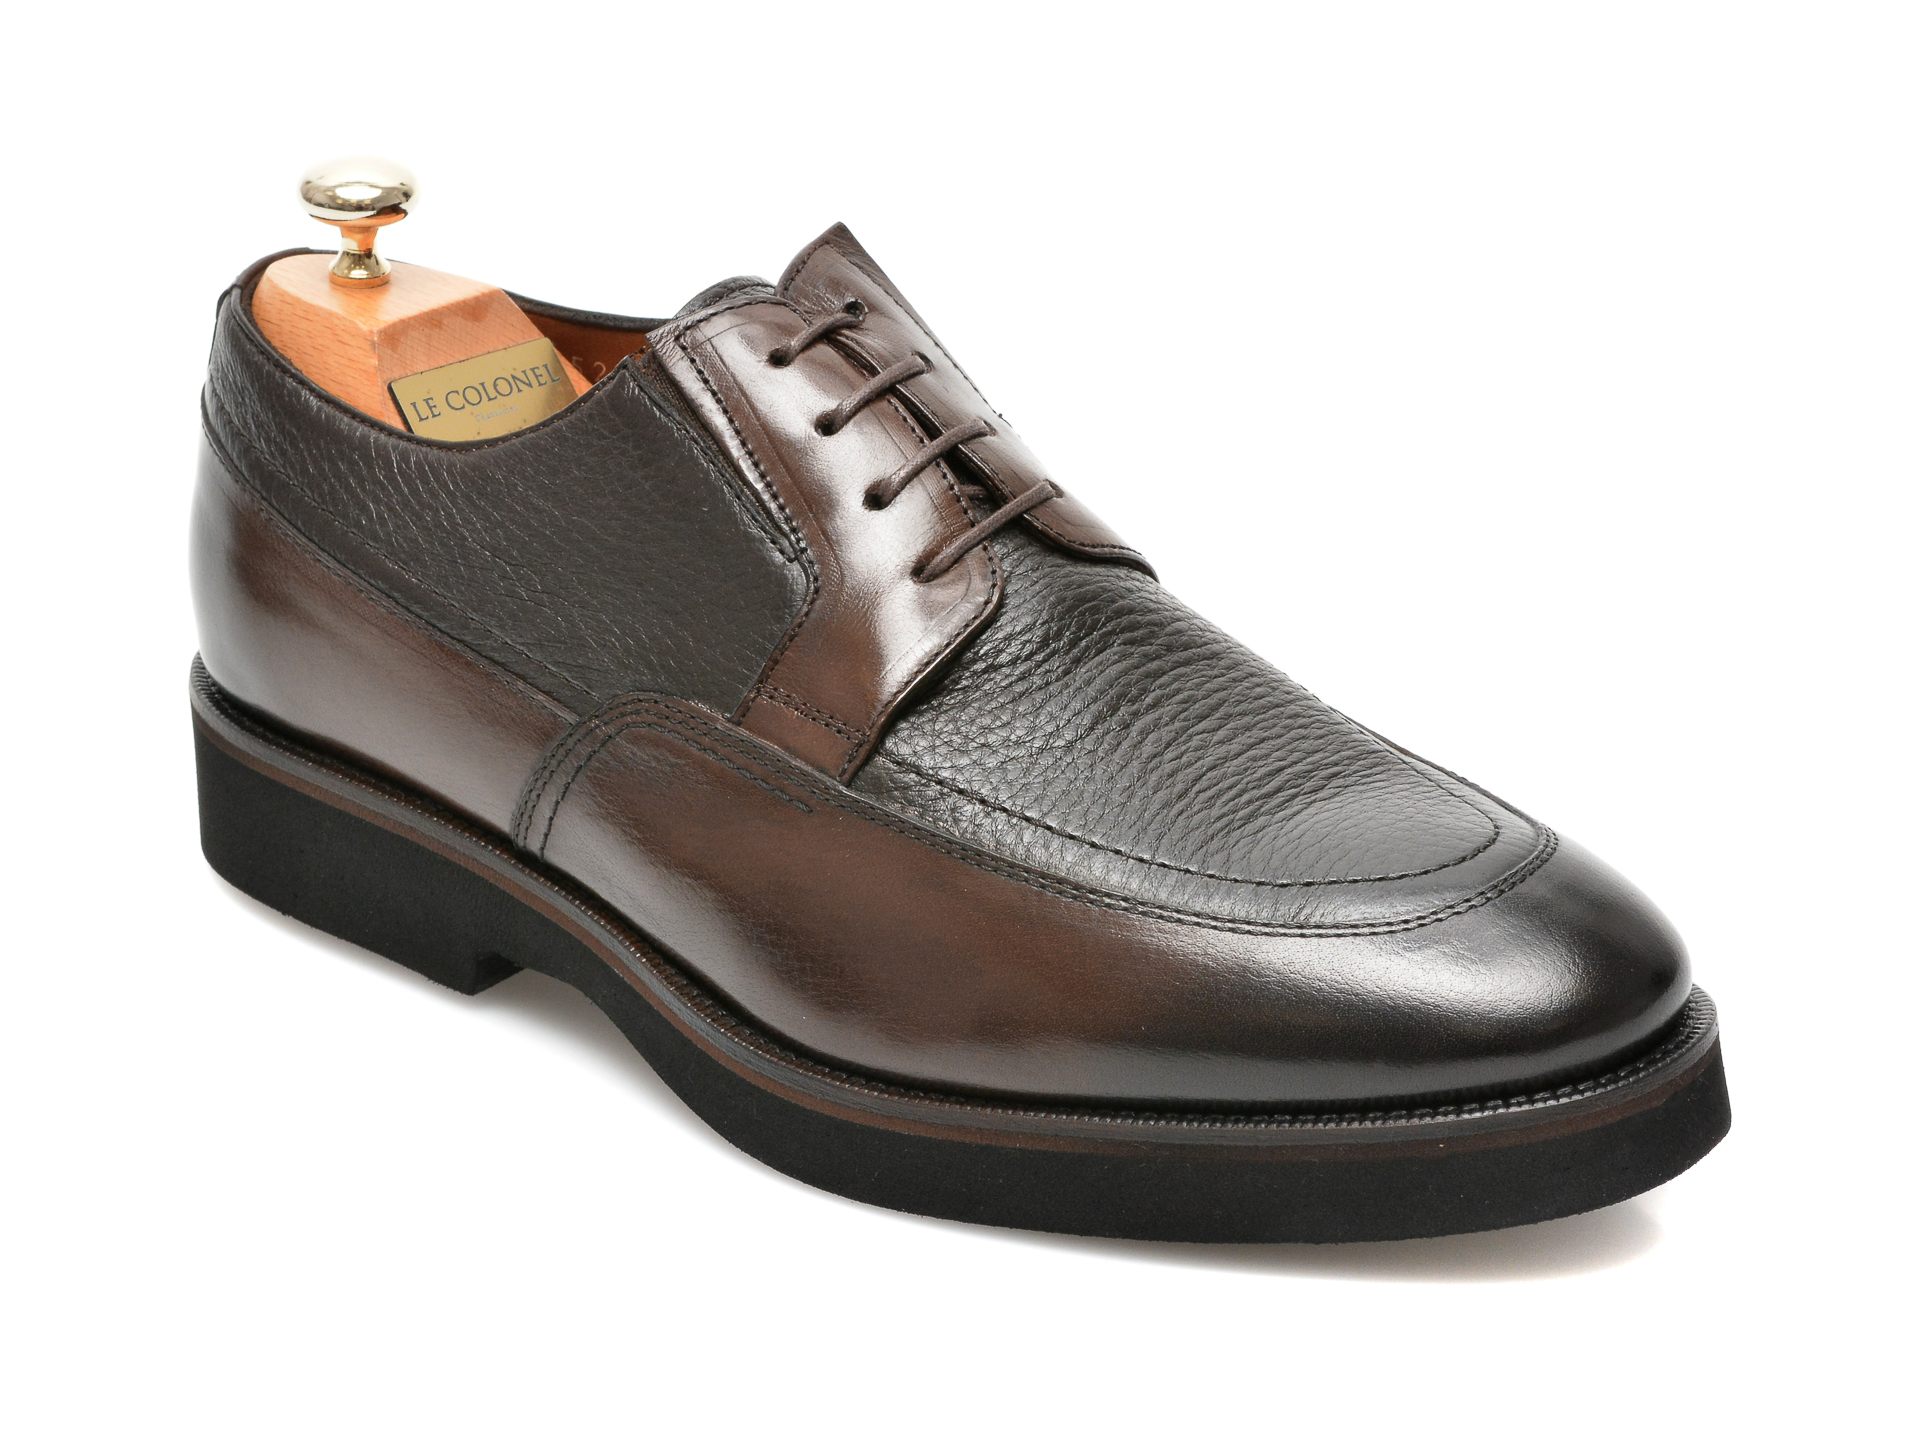 Pantofi LE COLONEL maro, 43452, din piele naturala Le Colonel Le Colonel